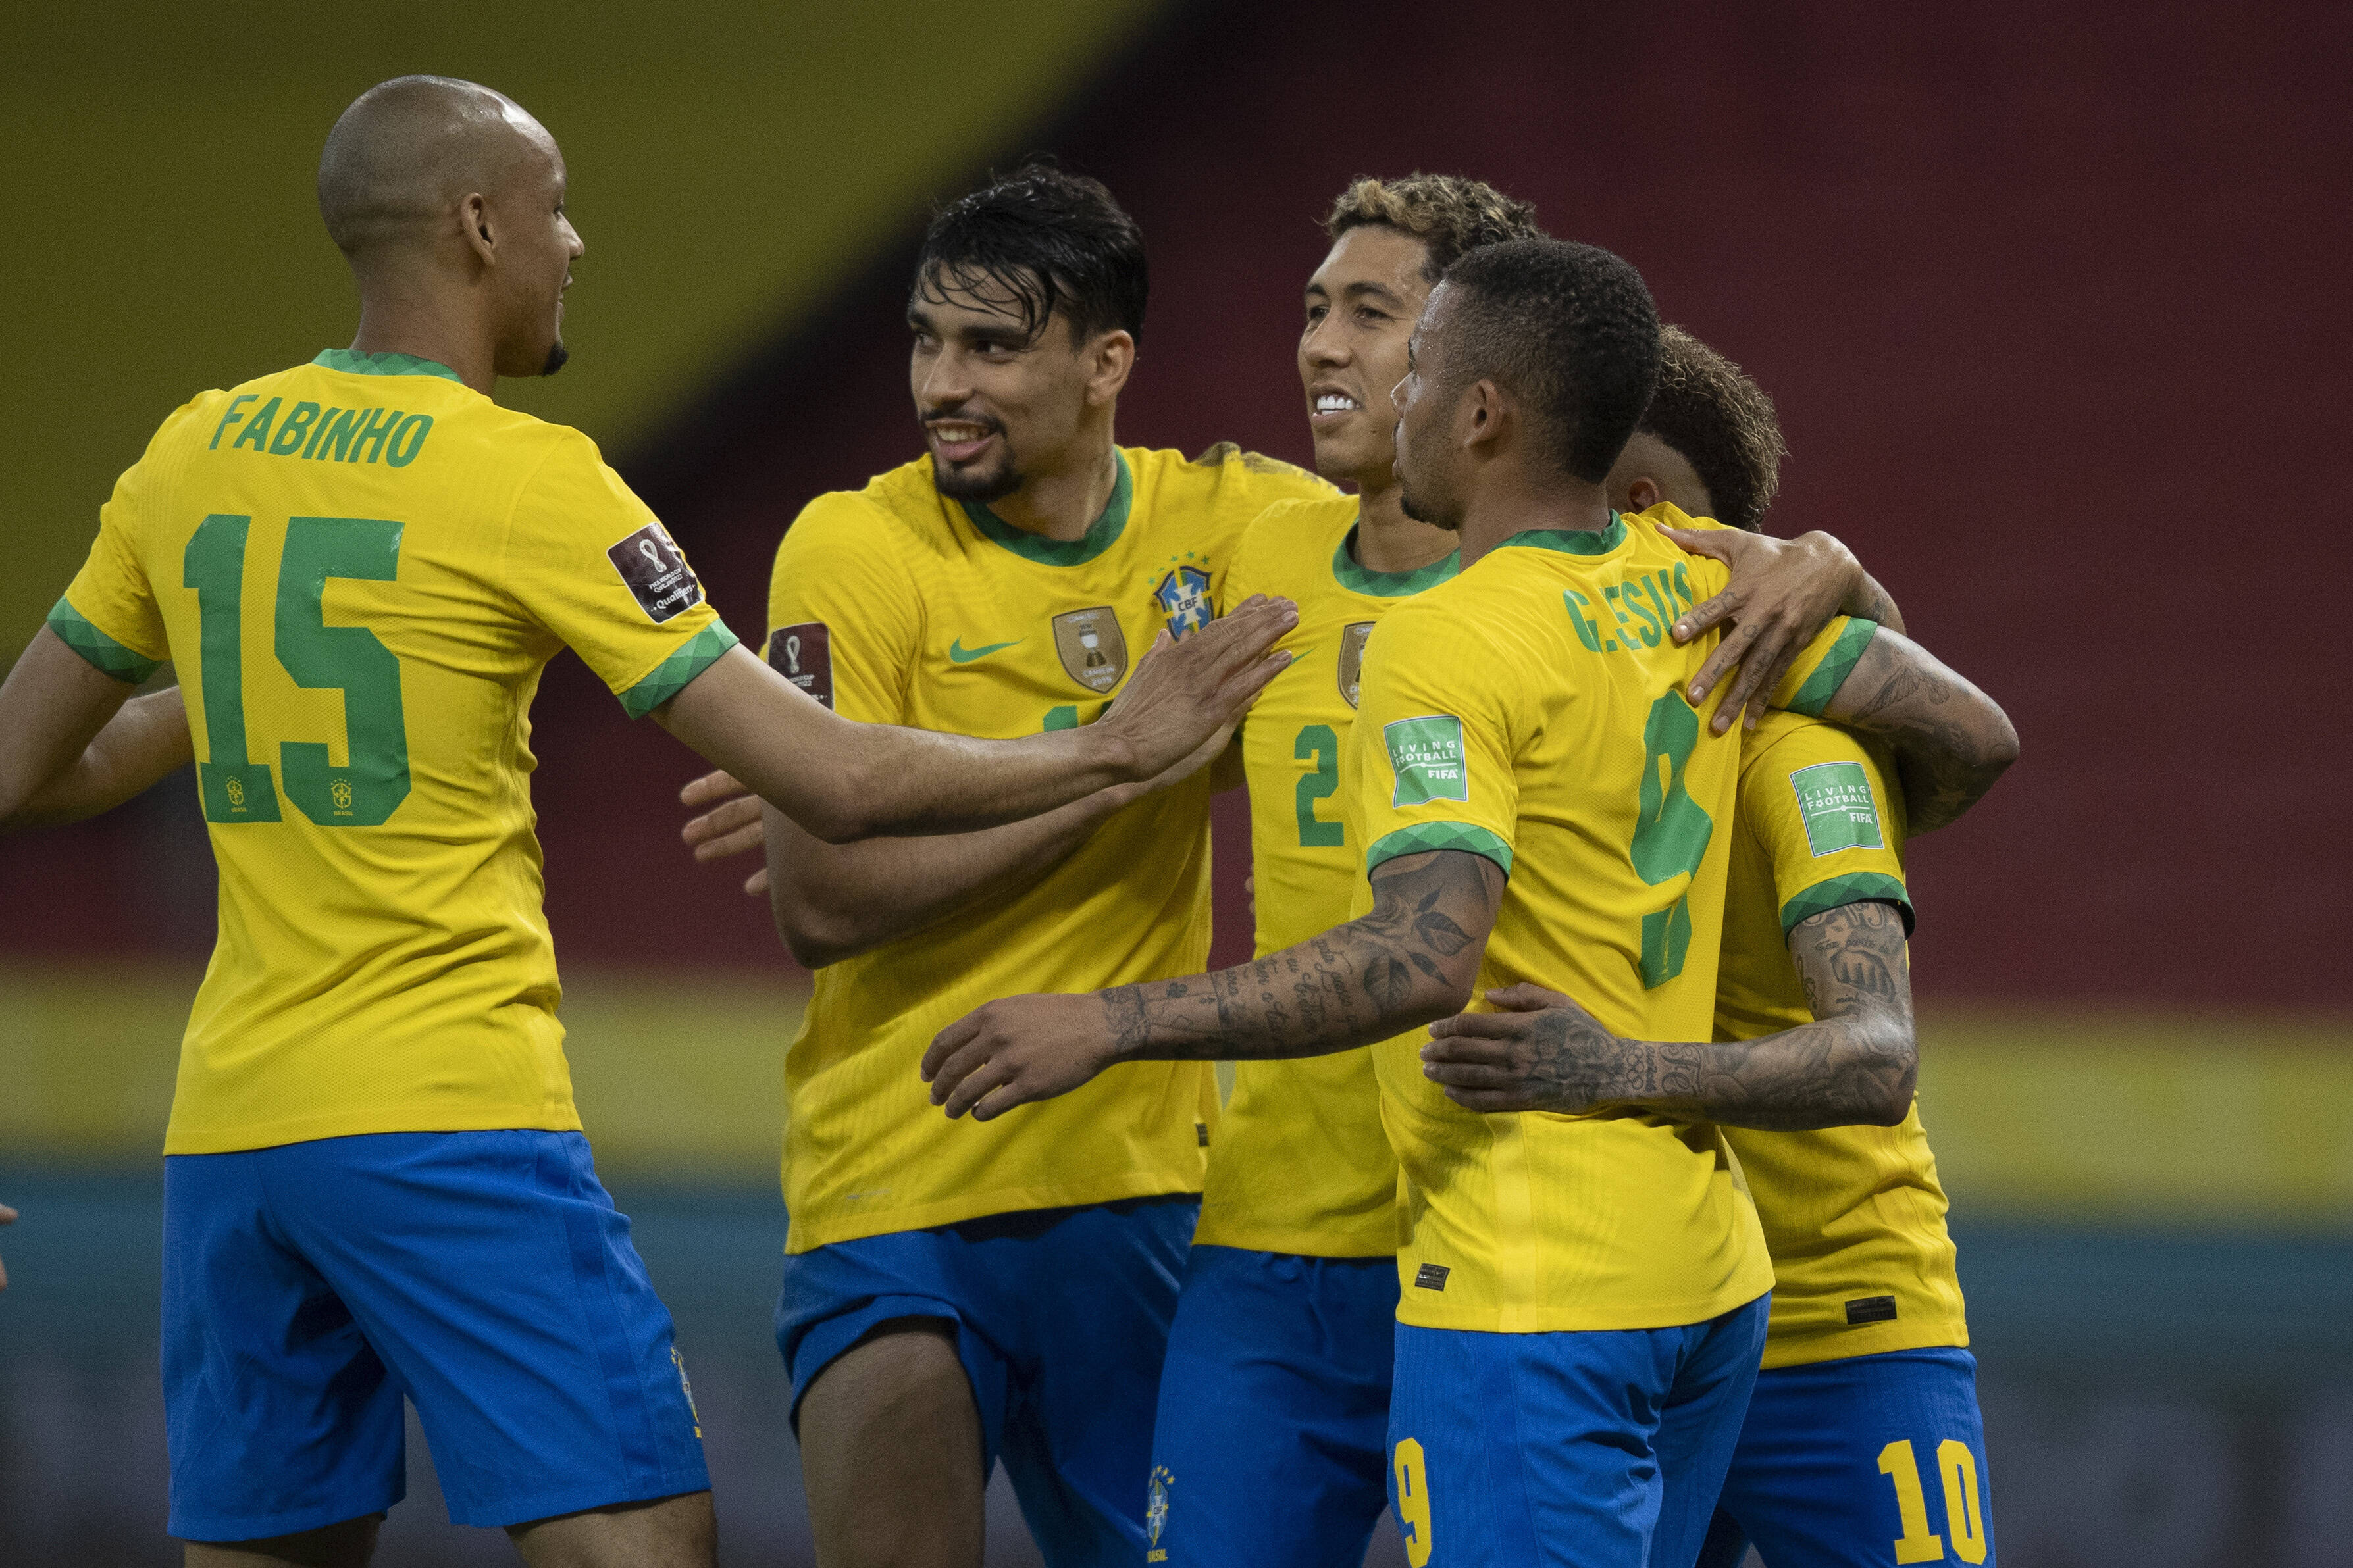 Brazil Football Team Players 2021 / A Former Player Calls Brazil